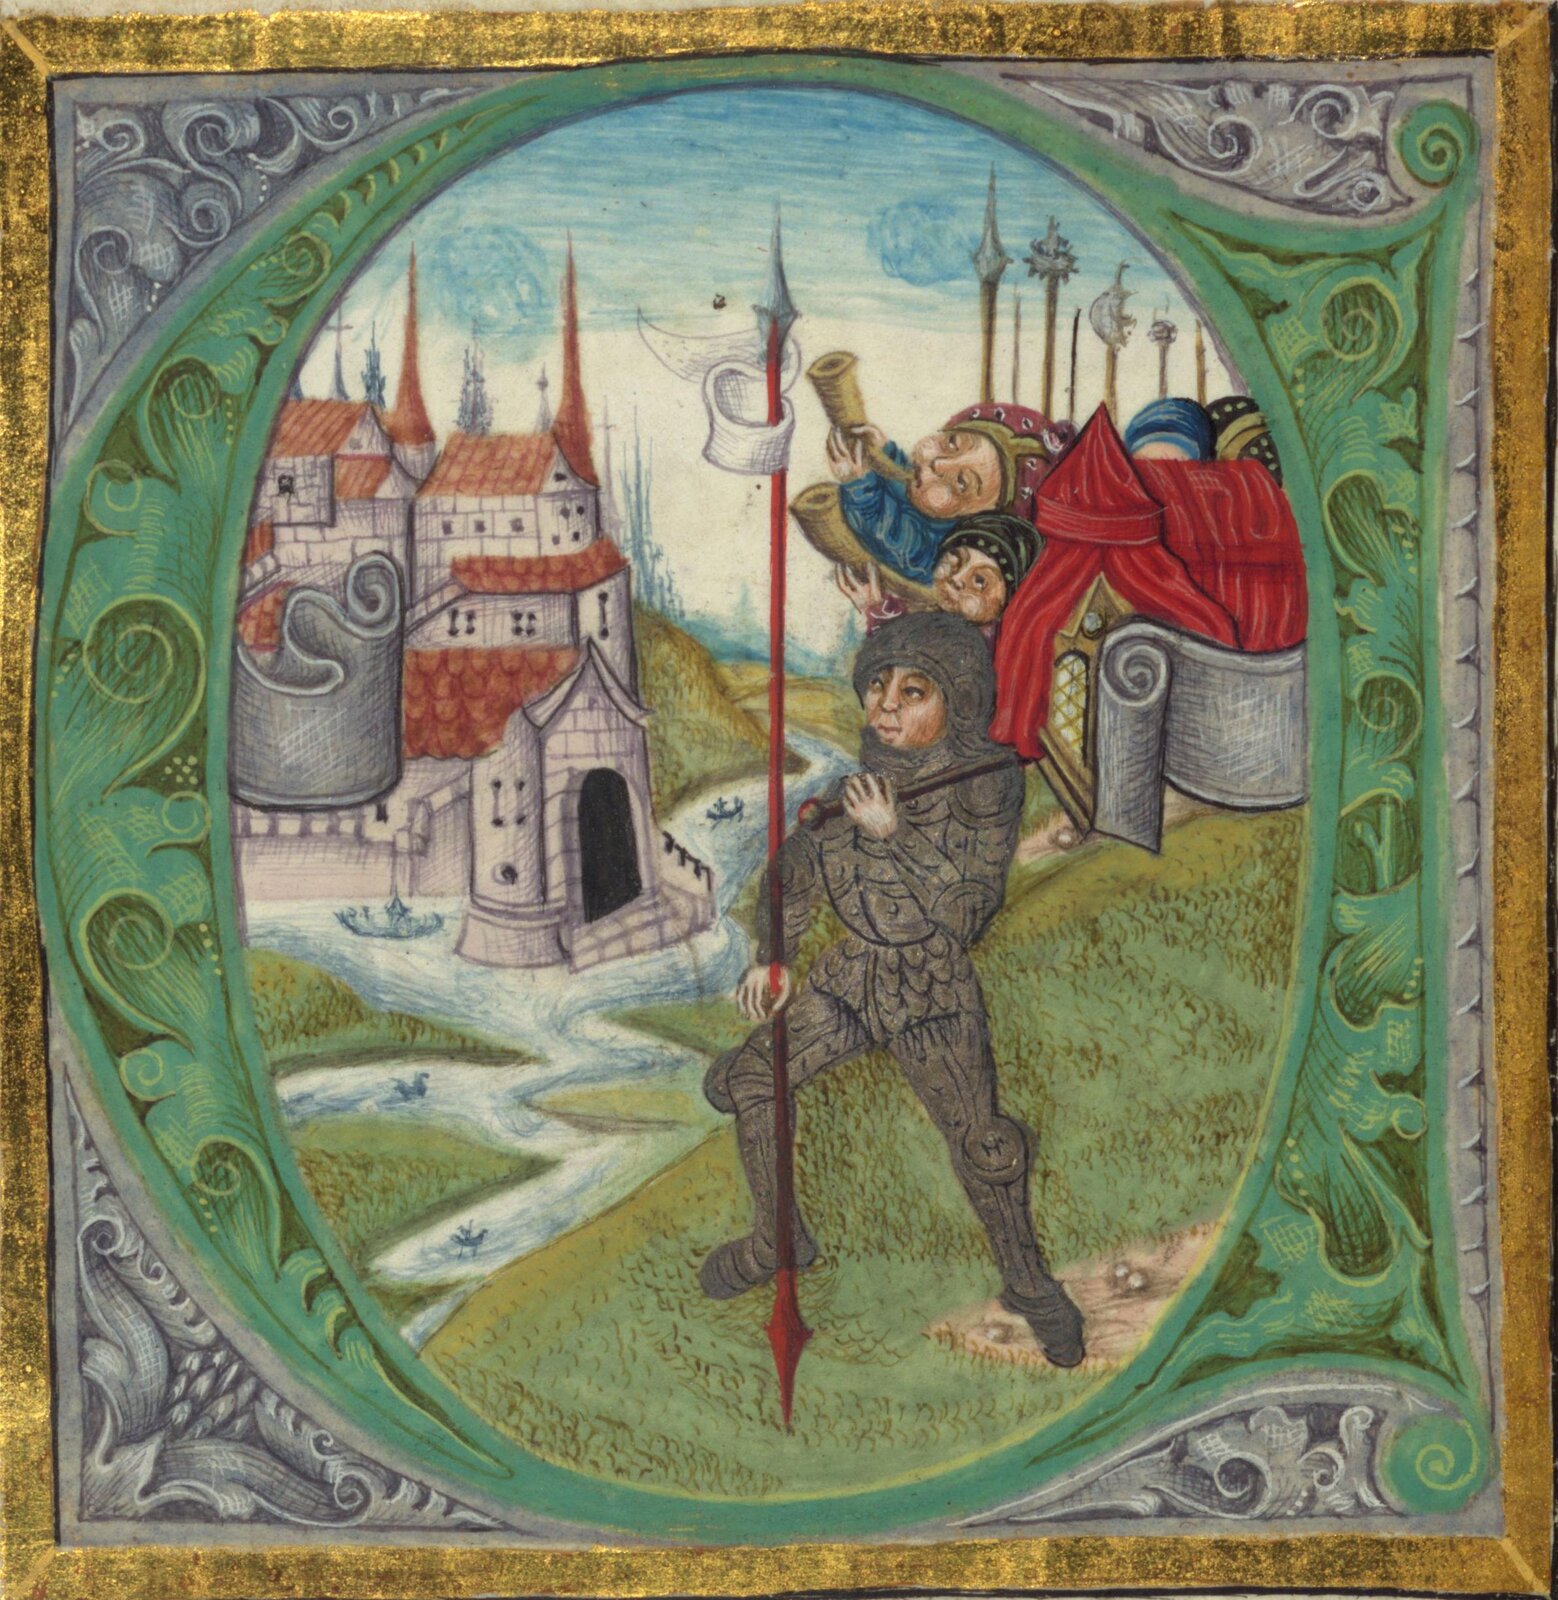 Zdjęcie przedstawia obraz w złotej ramie. Na obrazie ukazanych jest trzech mężczyzn. Jeden z nich ma rycerską zbroję. W tle można zaobserwować zamek książęcy.